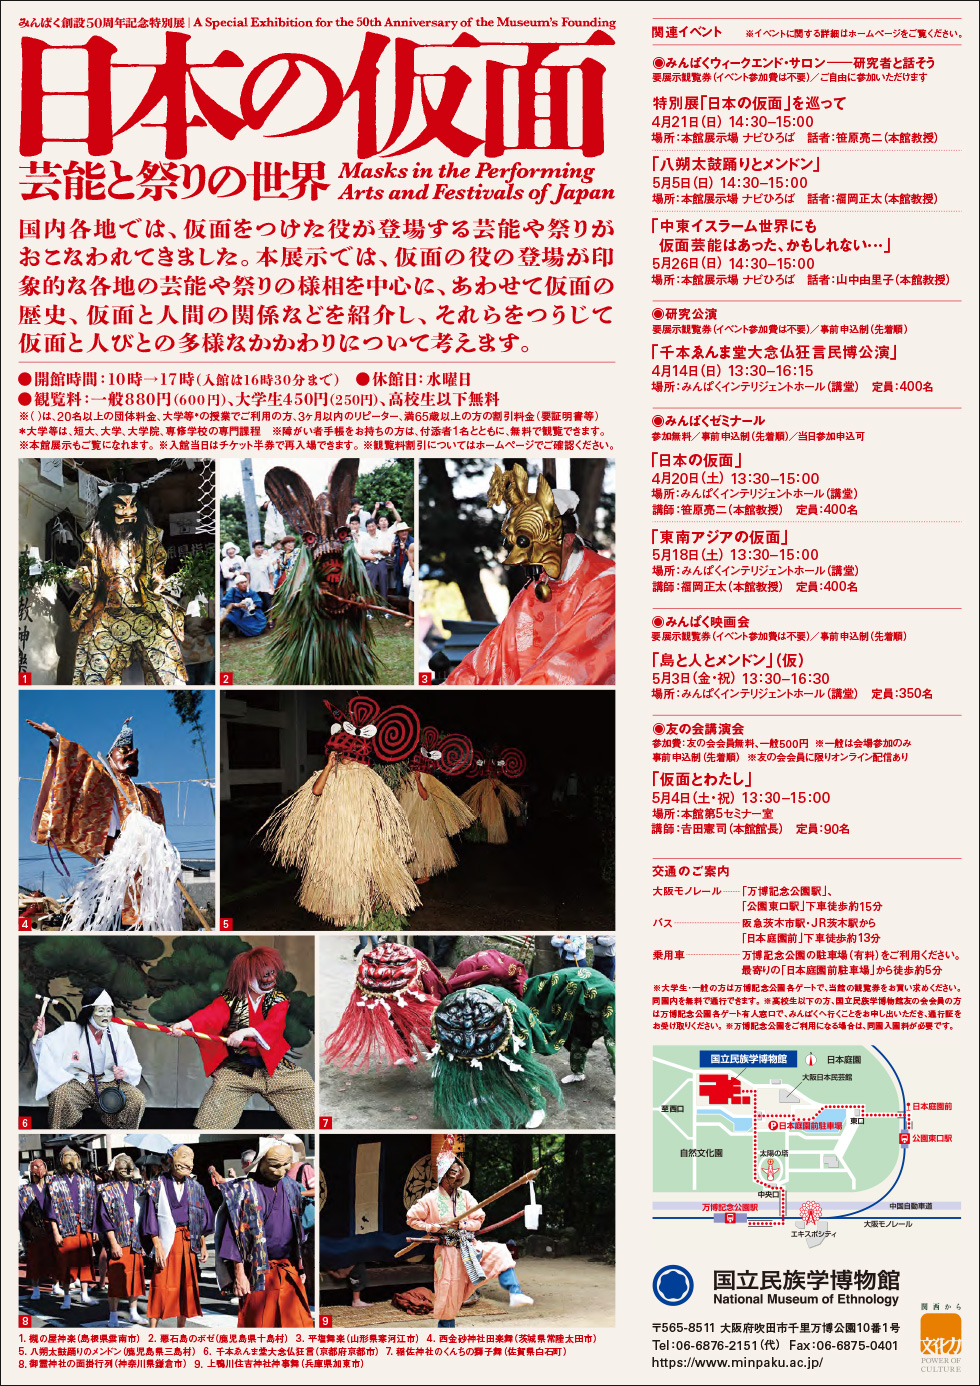 「日本の仮面ー芸能と祭りの世界」裏面イメージ